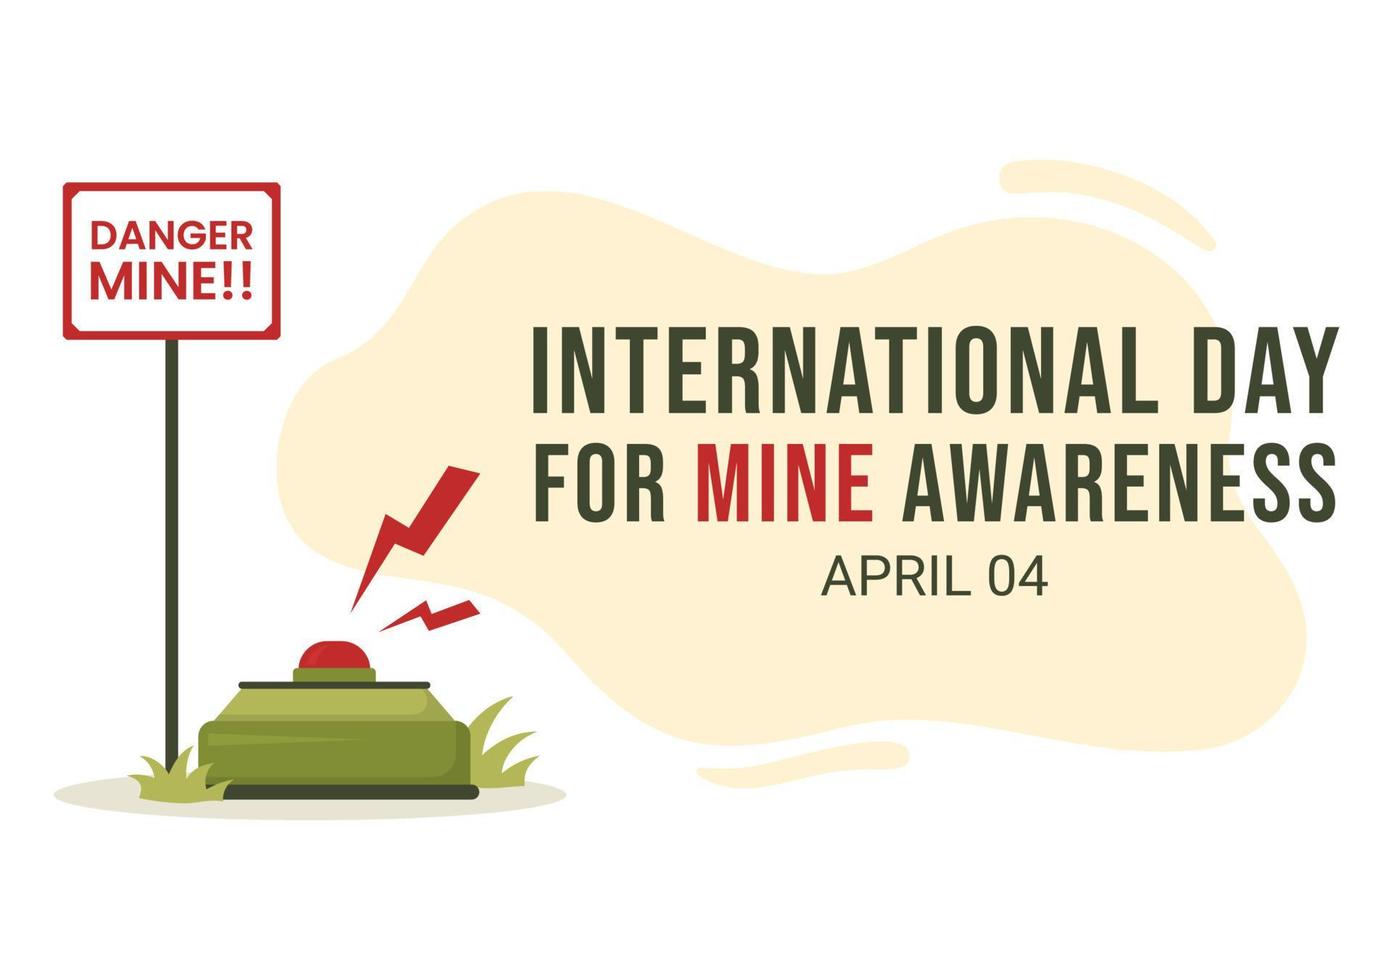 journée internationale de sensibilisation aux mines le 04 avril illustration avec ne pas marcher sur les mines terrestres pour la bannière web dans des modèles dessinés à la main de dessin animé plat vecteur